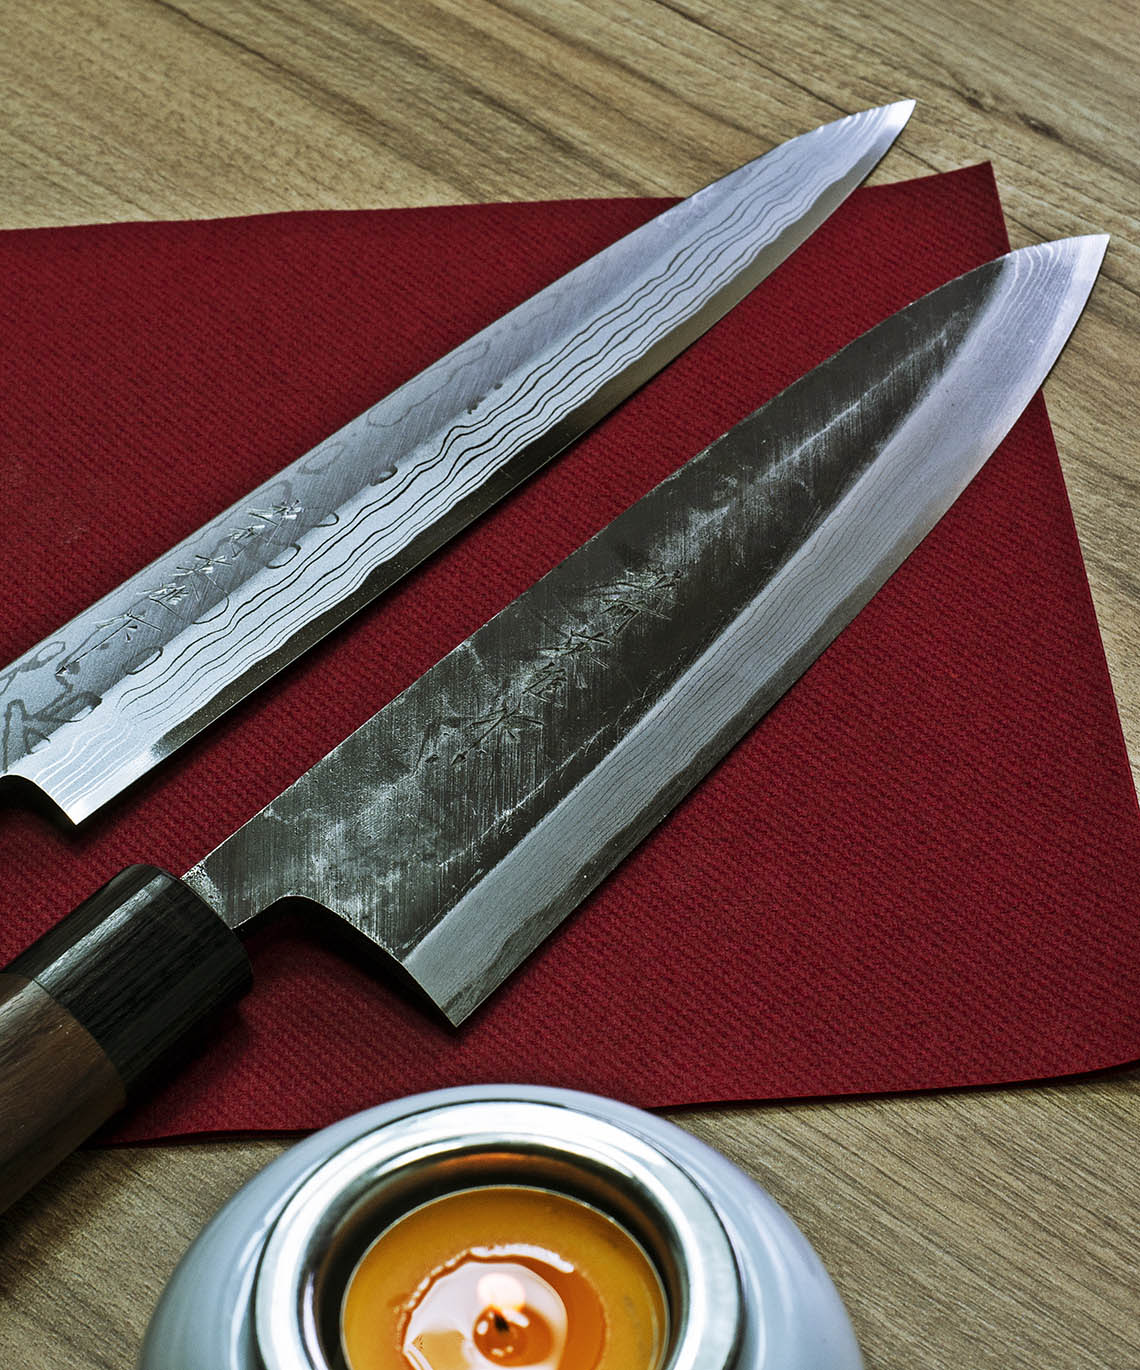 Japońskie noże mistrza rzemiosła Hideo Kitaoka nauczą prawdziwego krojenia